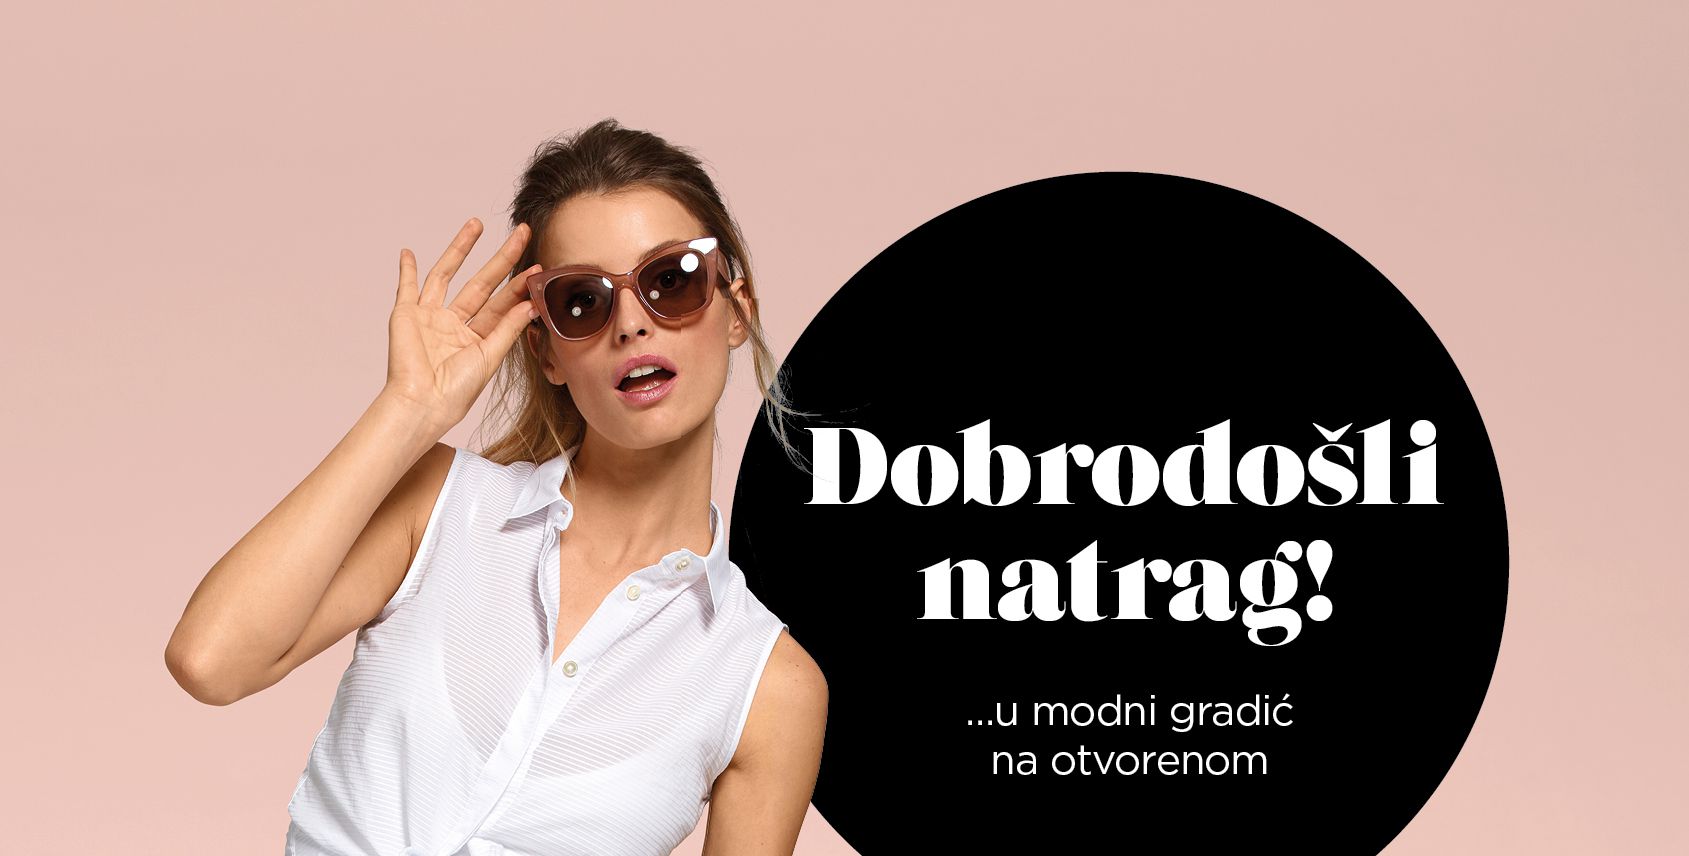 Designer Outlet Croatia otvara trgovine od srijede, 29. travnja